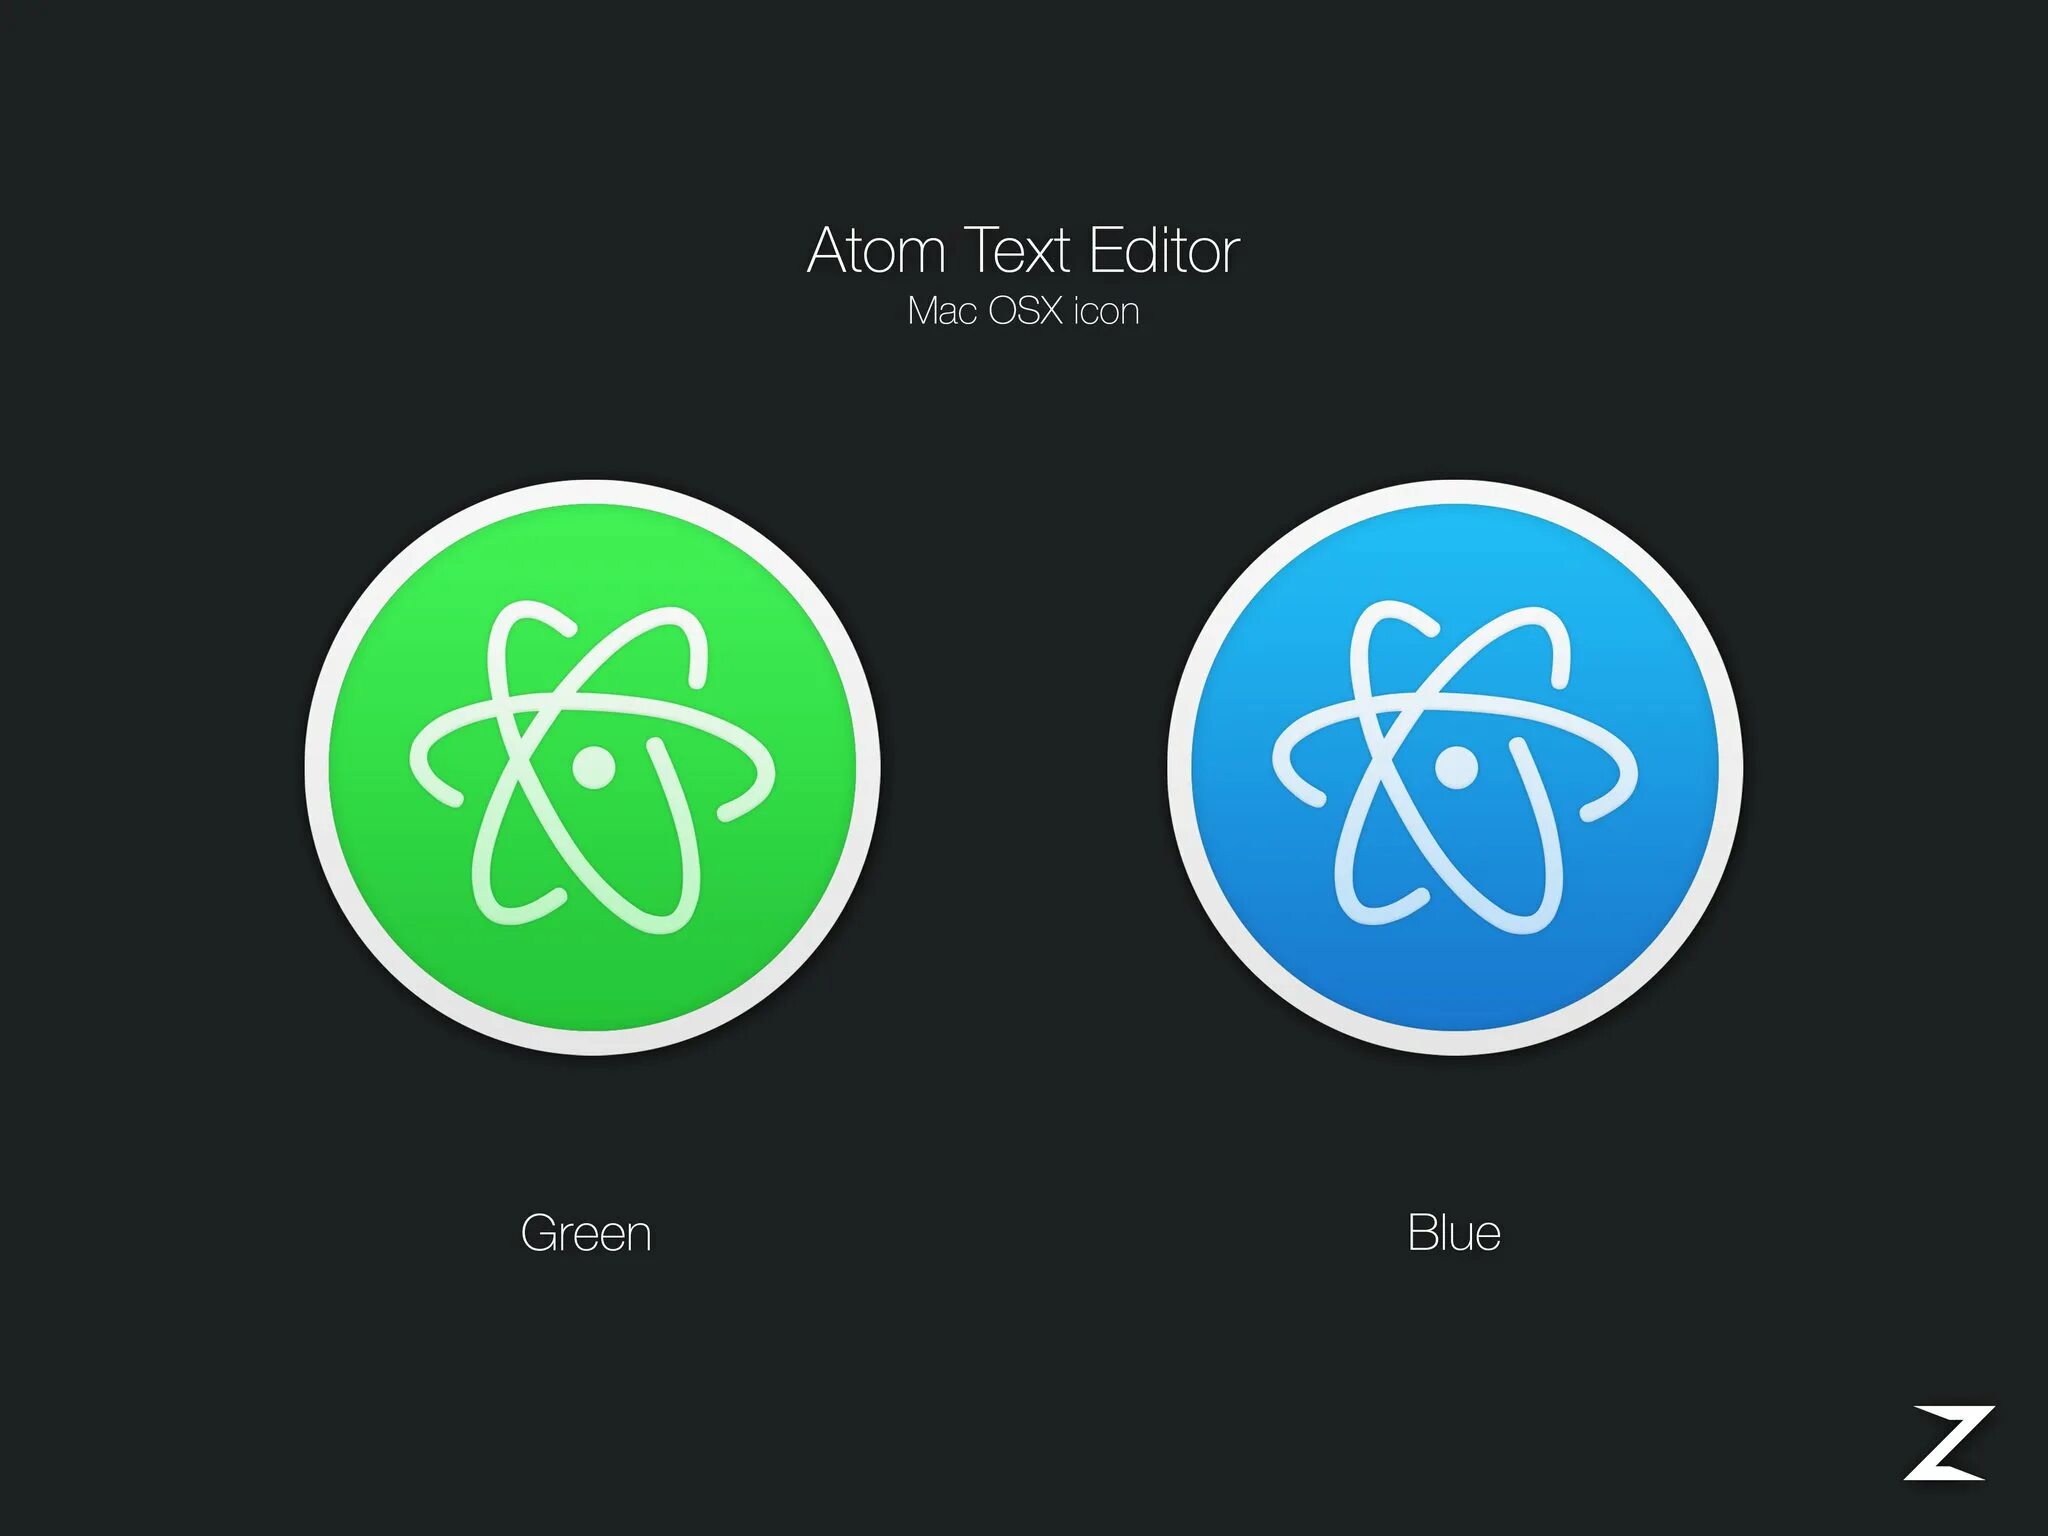 Атом текста 5. Atom редактор. Atom text Editor. Atom текстовый редактор logo. Atom редактор иконка.